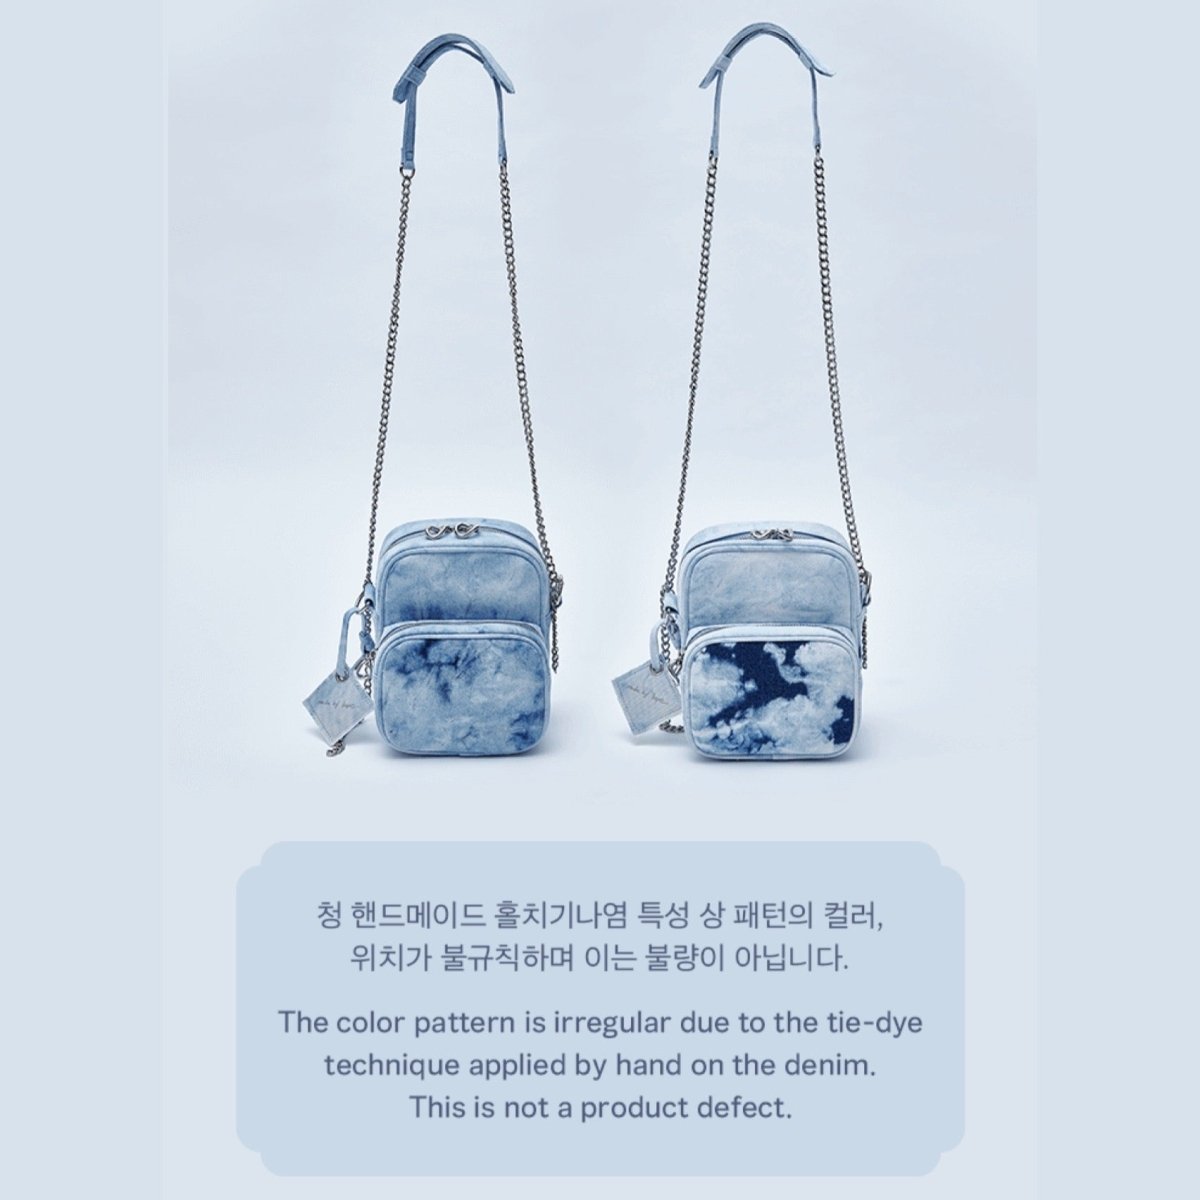 BTS J HOPE Side By Side Bag ARTIST MADE COLLECTION BY BTS : J HOPE + DHL